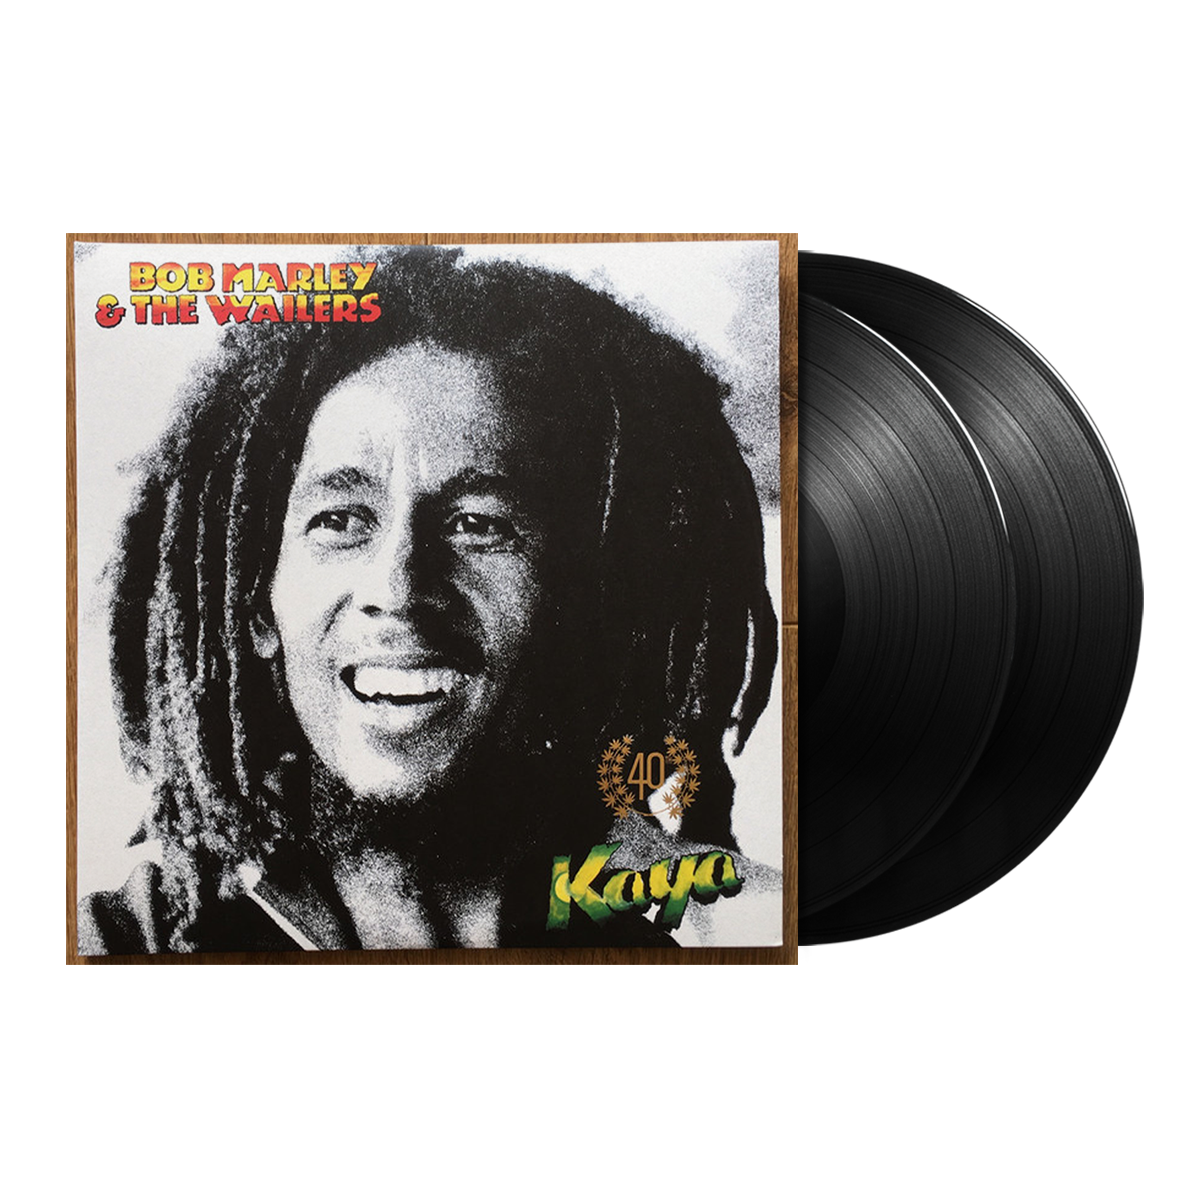 Bob Marley & The Wailers, Kaya (40th Anniversary Edition 2LP)